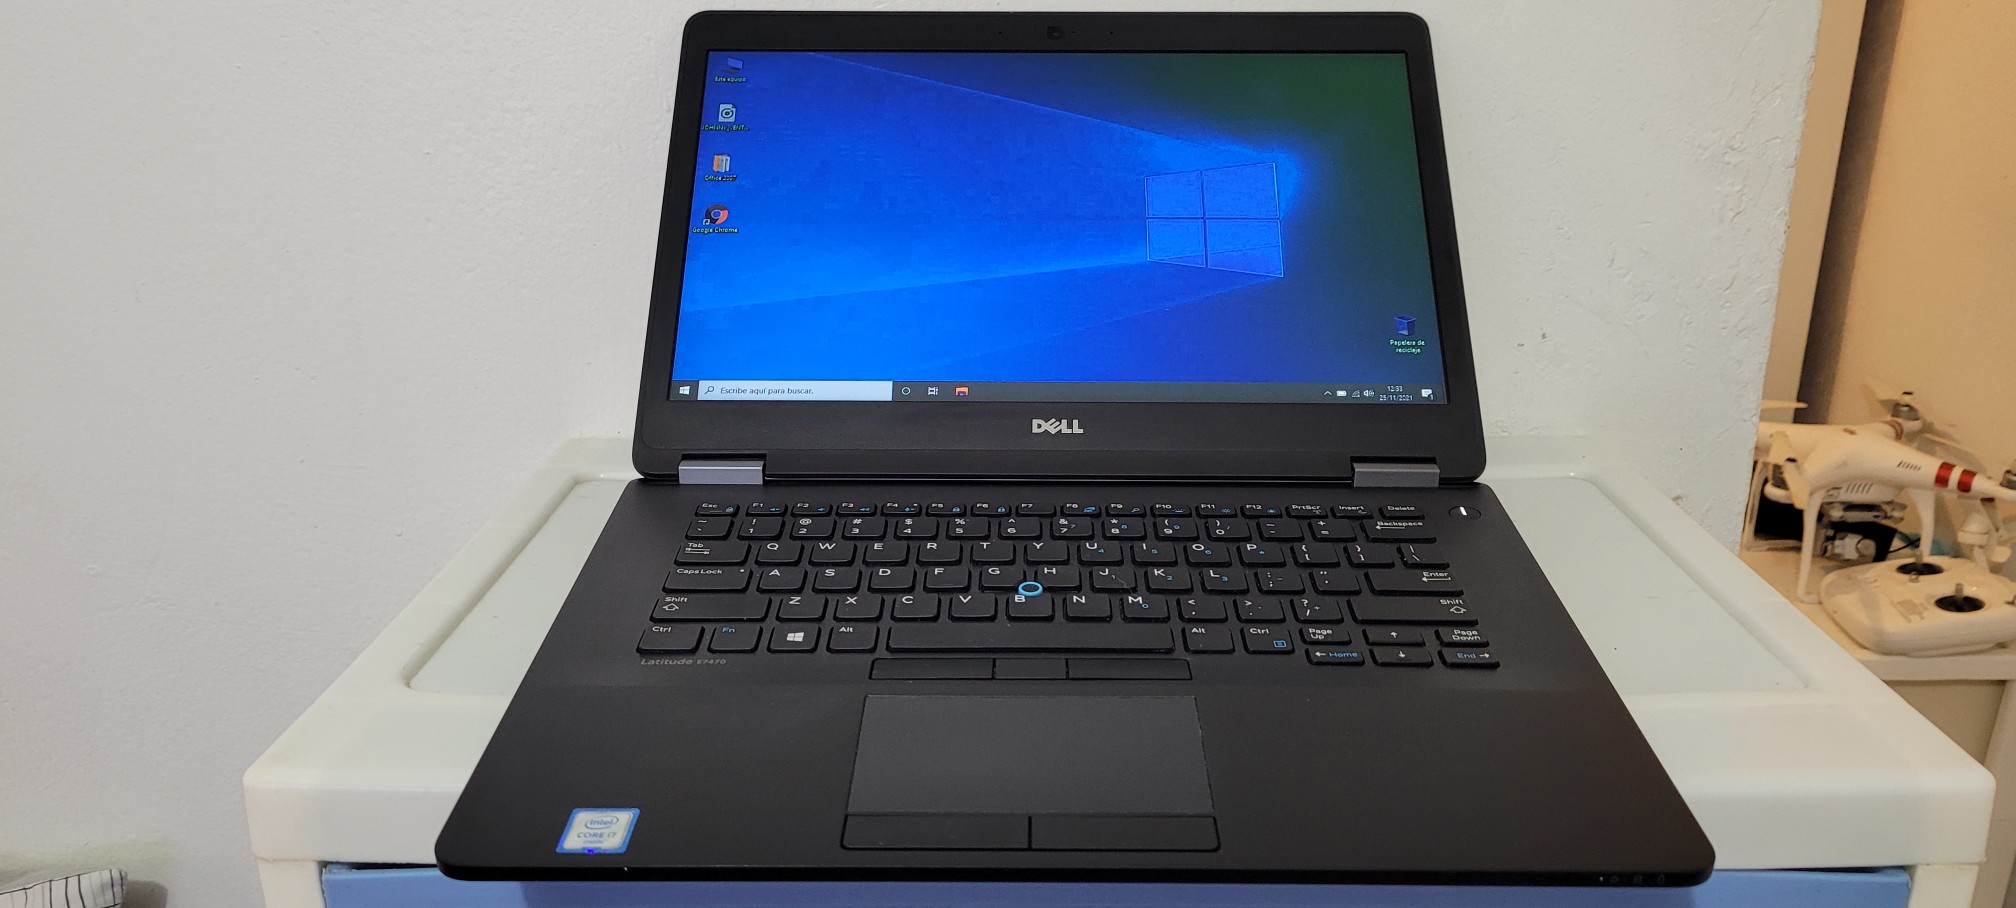 computadoras y laptops - Dell 7470 14 Pulg Core i5 7ma Gen Ram 8gb ddr4 Disco 128gb SSD Full 1080p 0